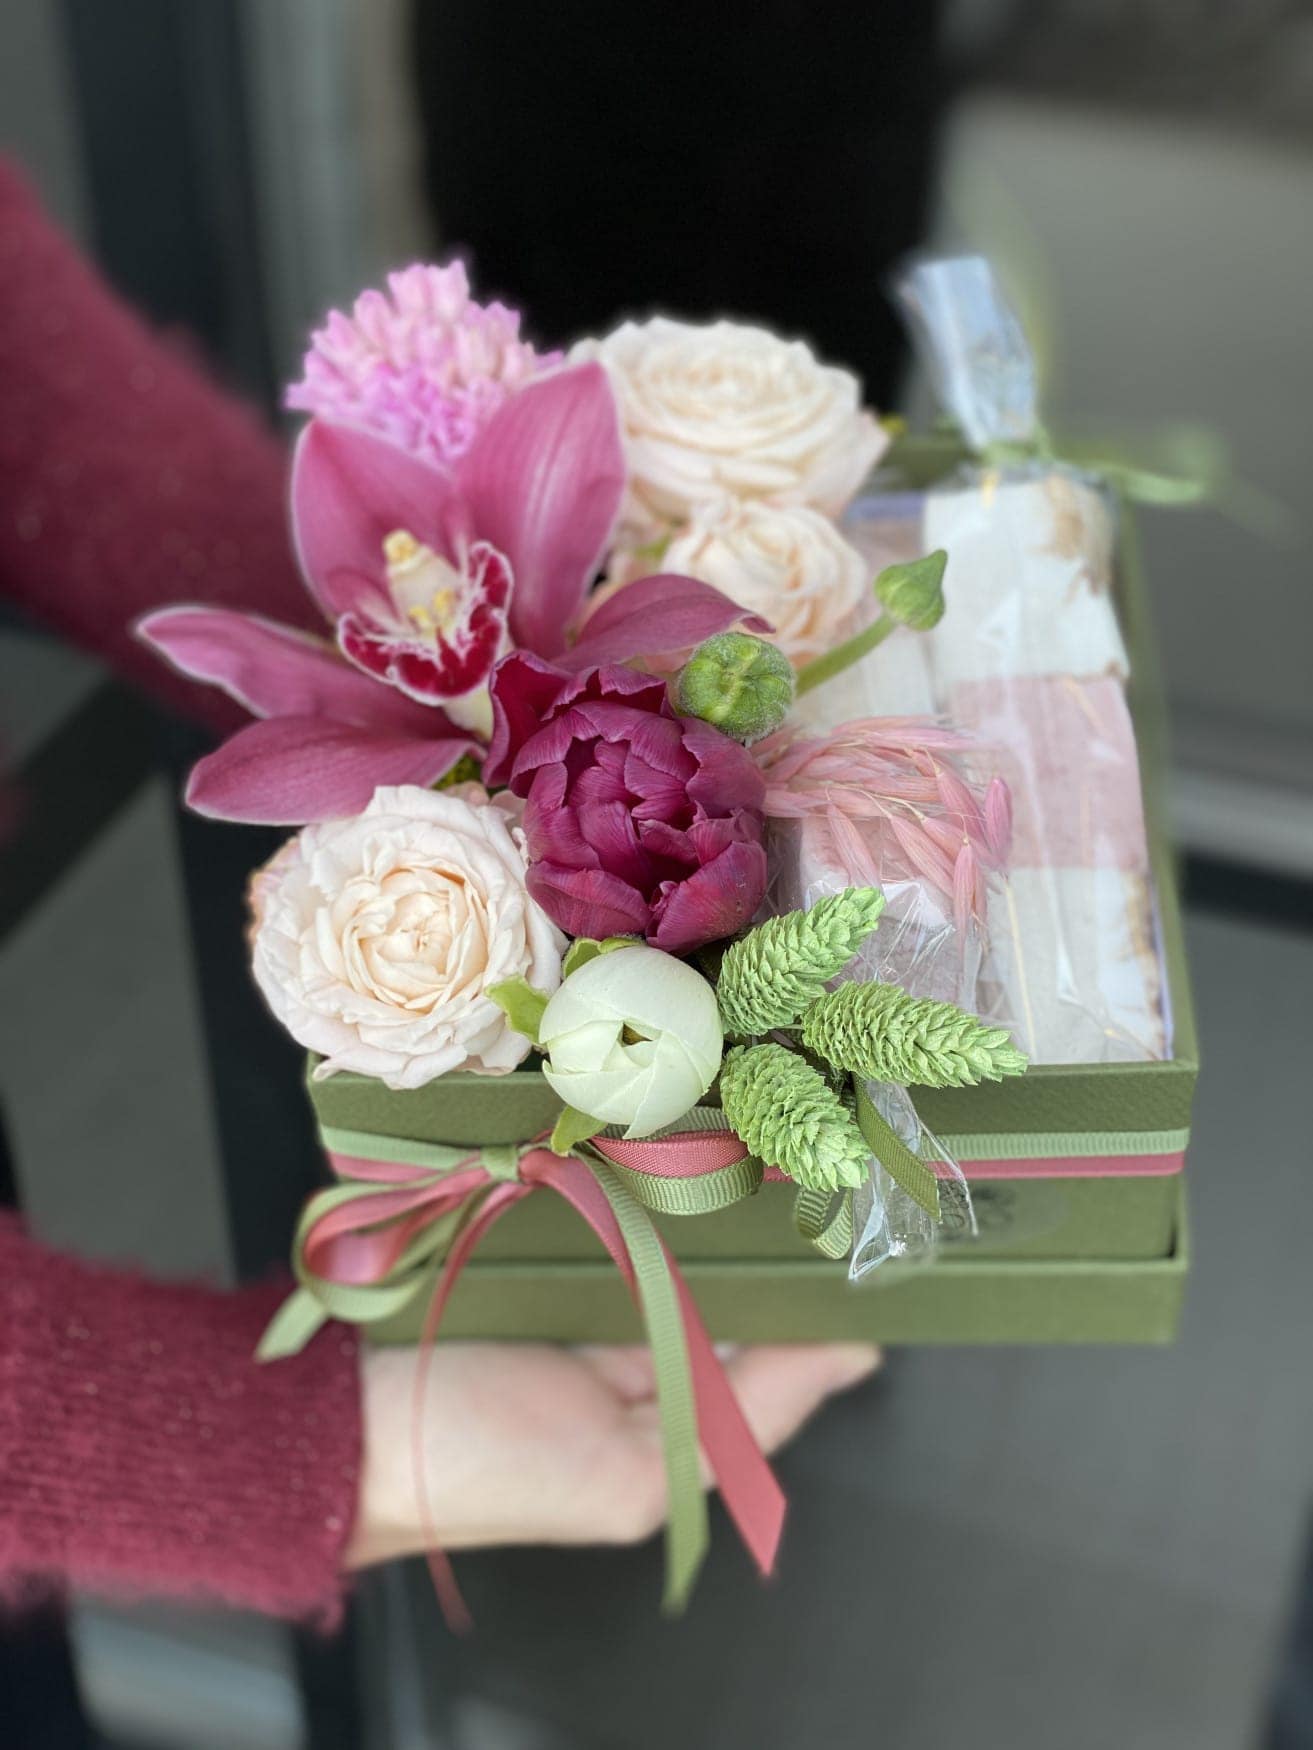 Букеты цветов со сладостями в коробке – подарок на любой праздник